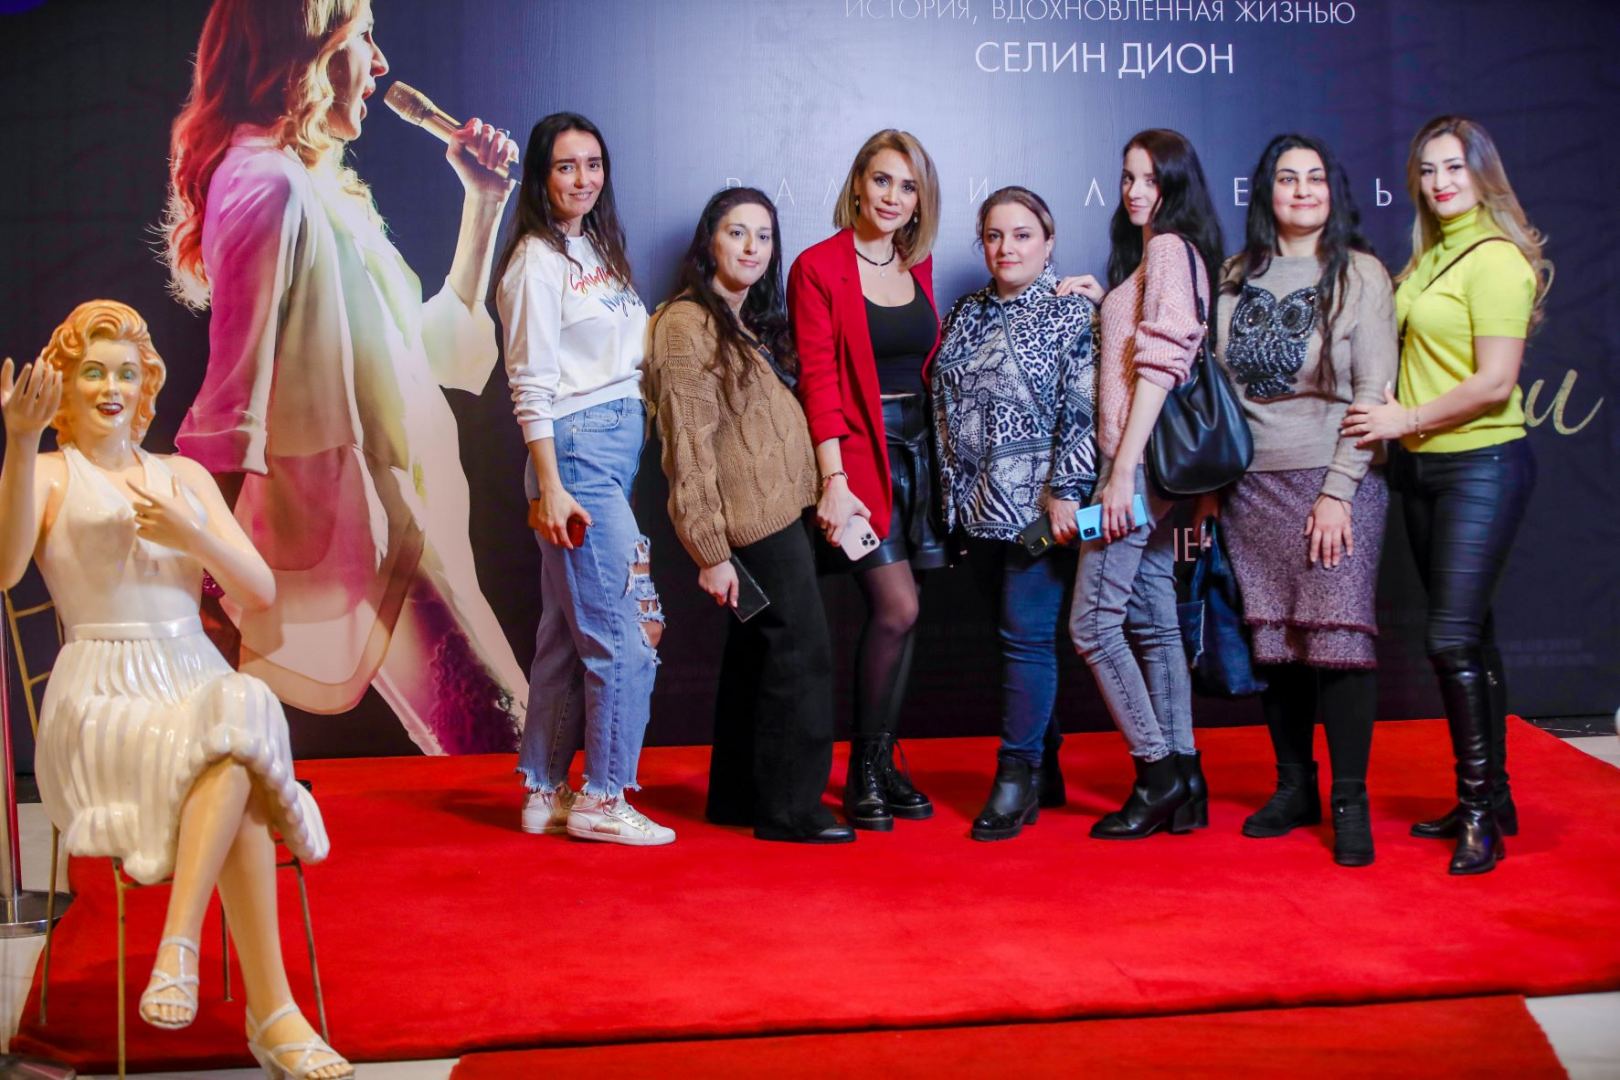 Реальная история любви Селин Дион в Баку (ВИДЕО, ФОТО)